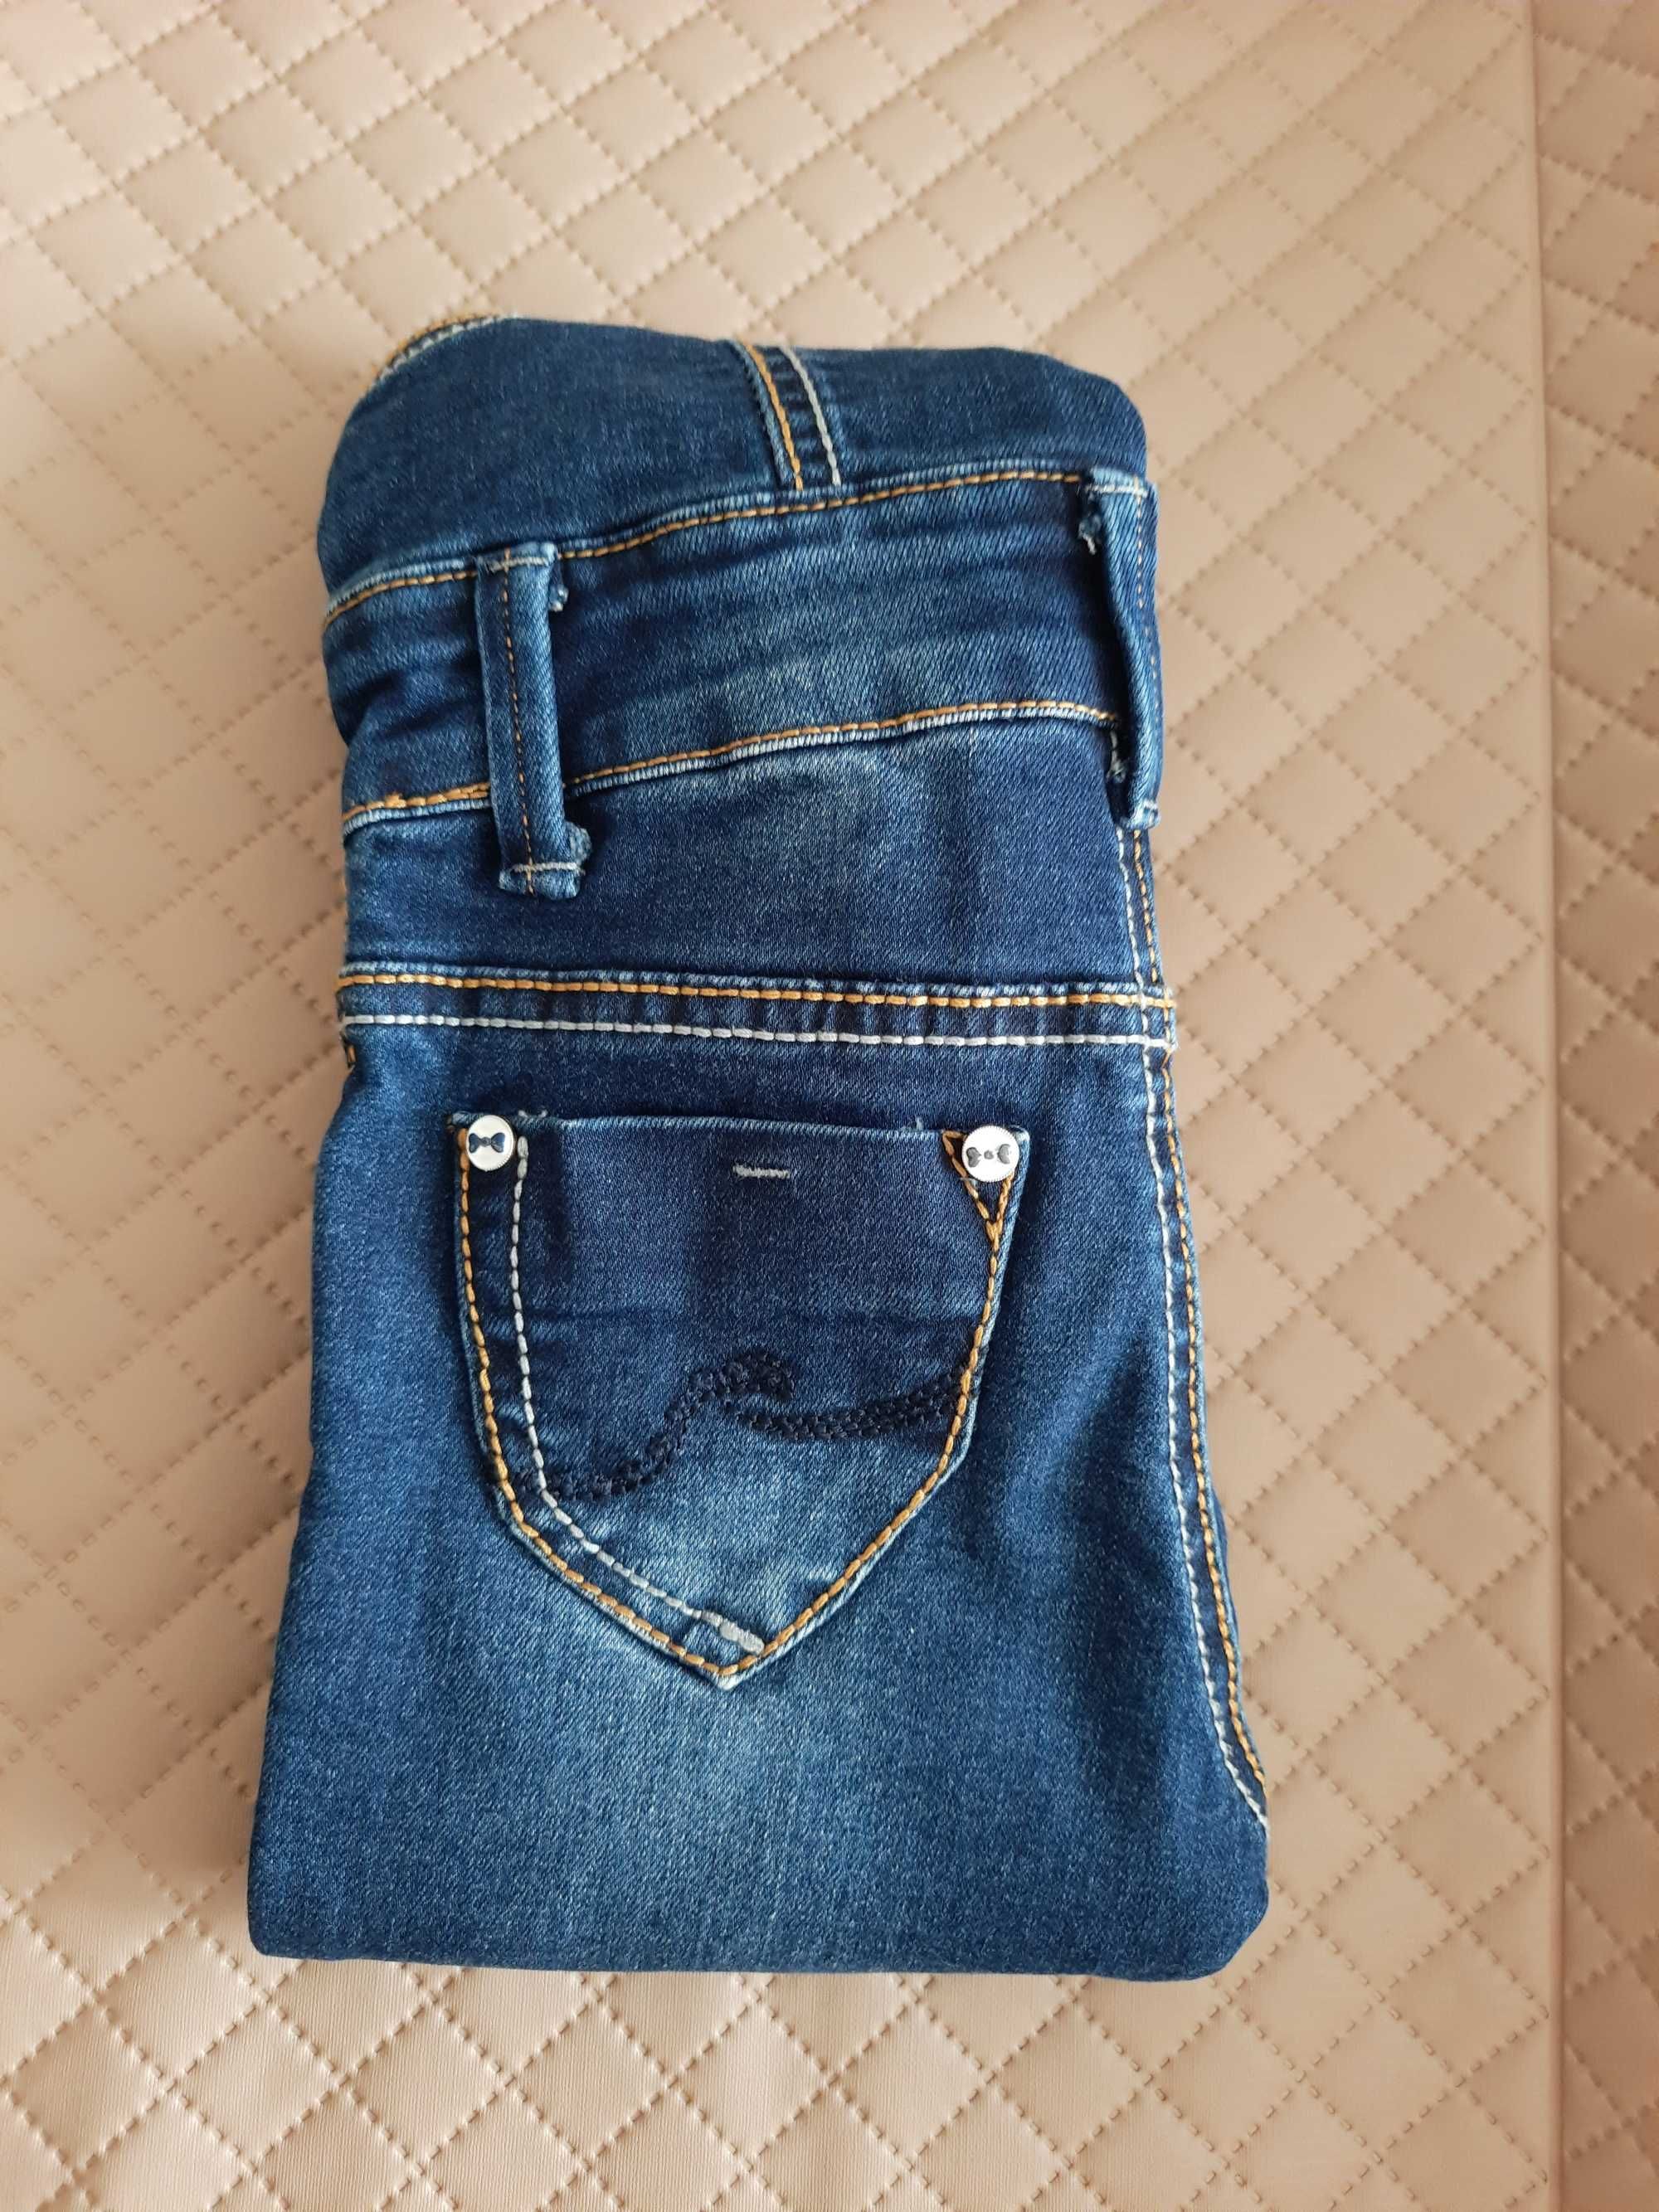 Ogrodniczki jeansy dżinsy spodnie spodenki roz. 92, SUPER STAN